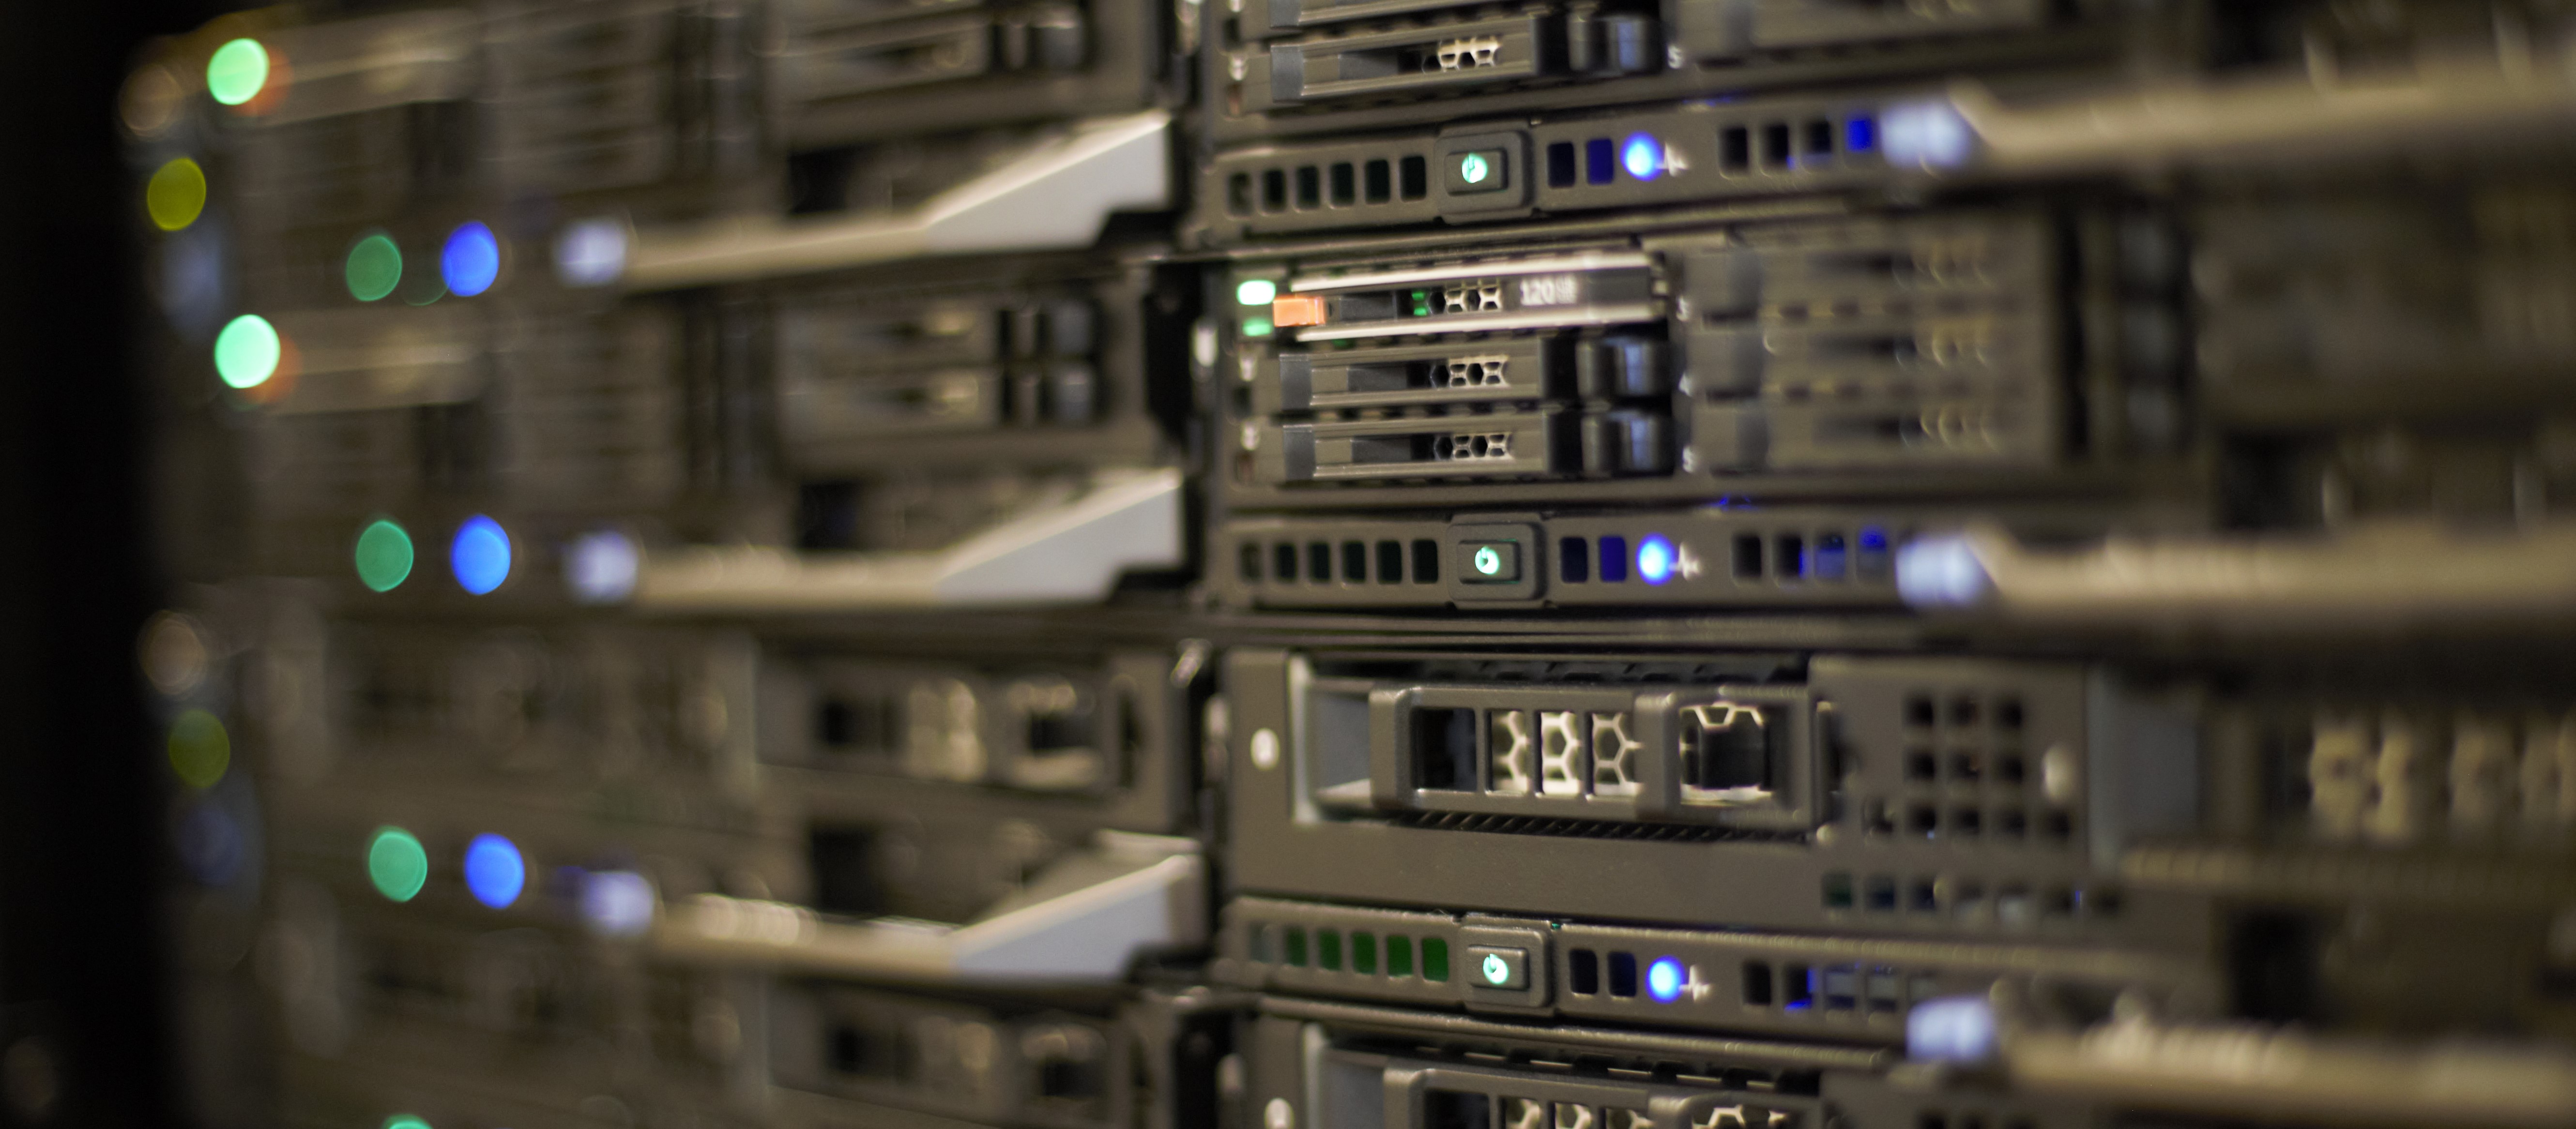 image of rack mounted servers